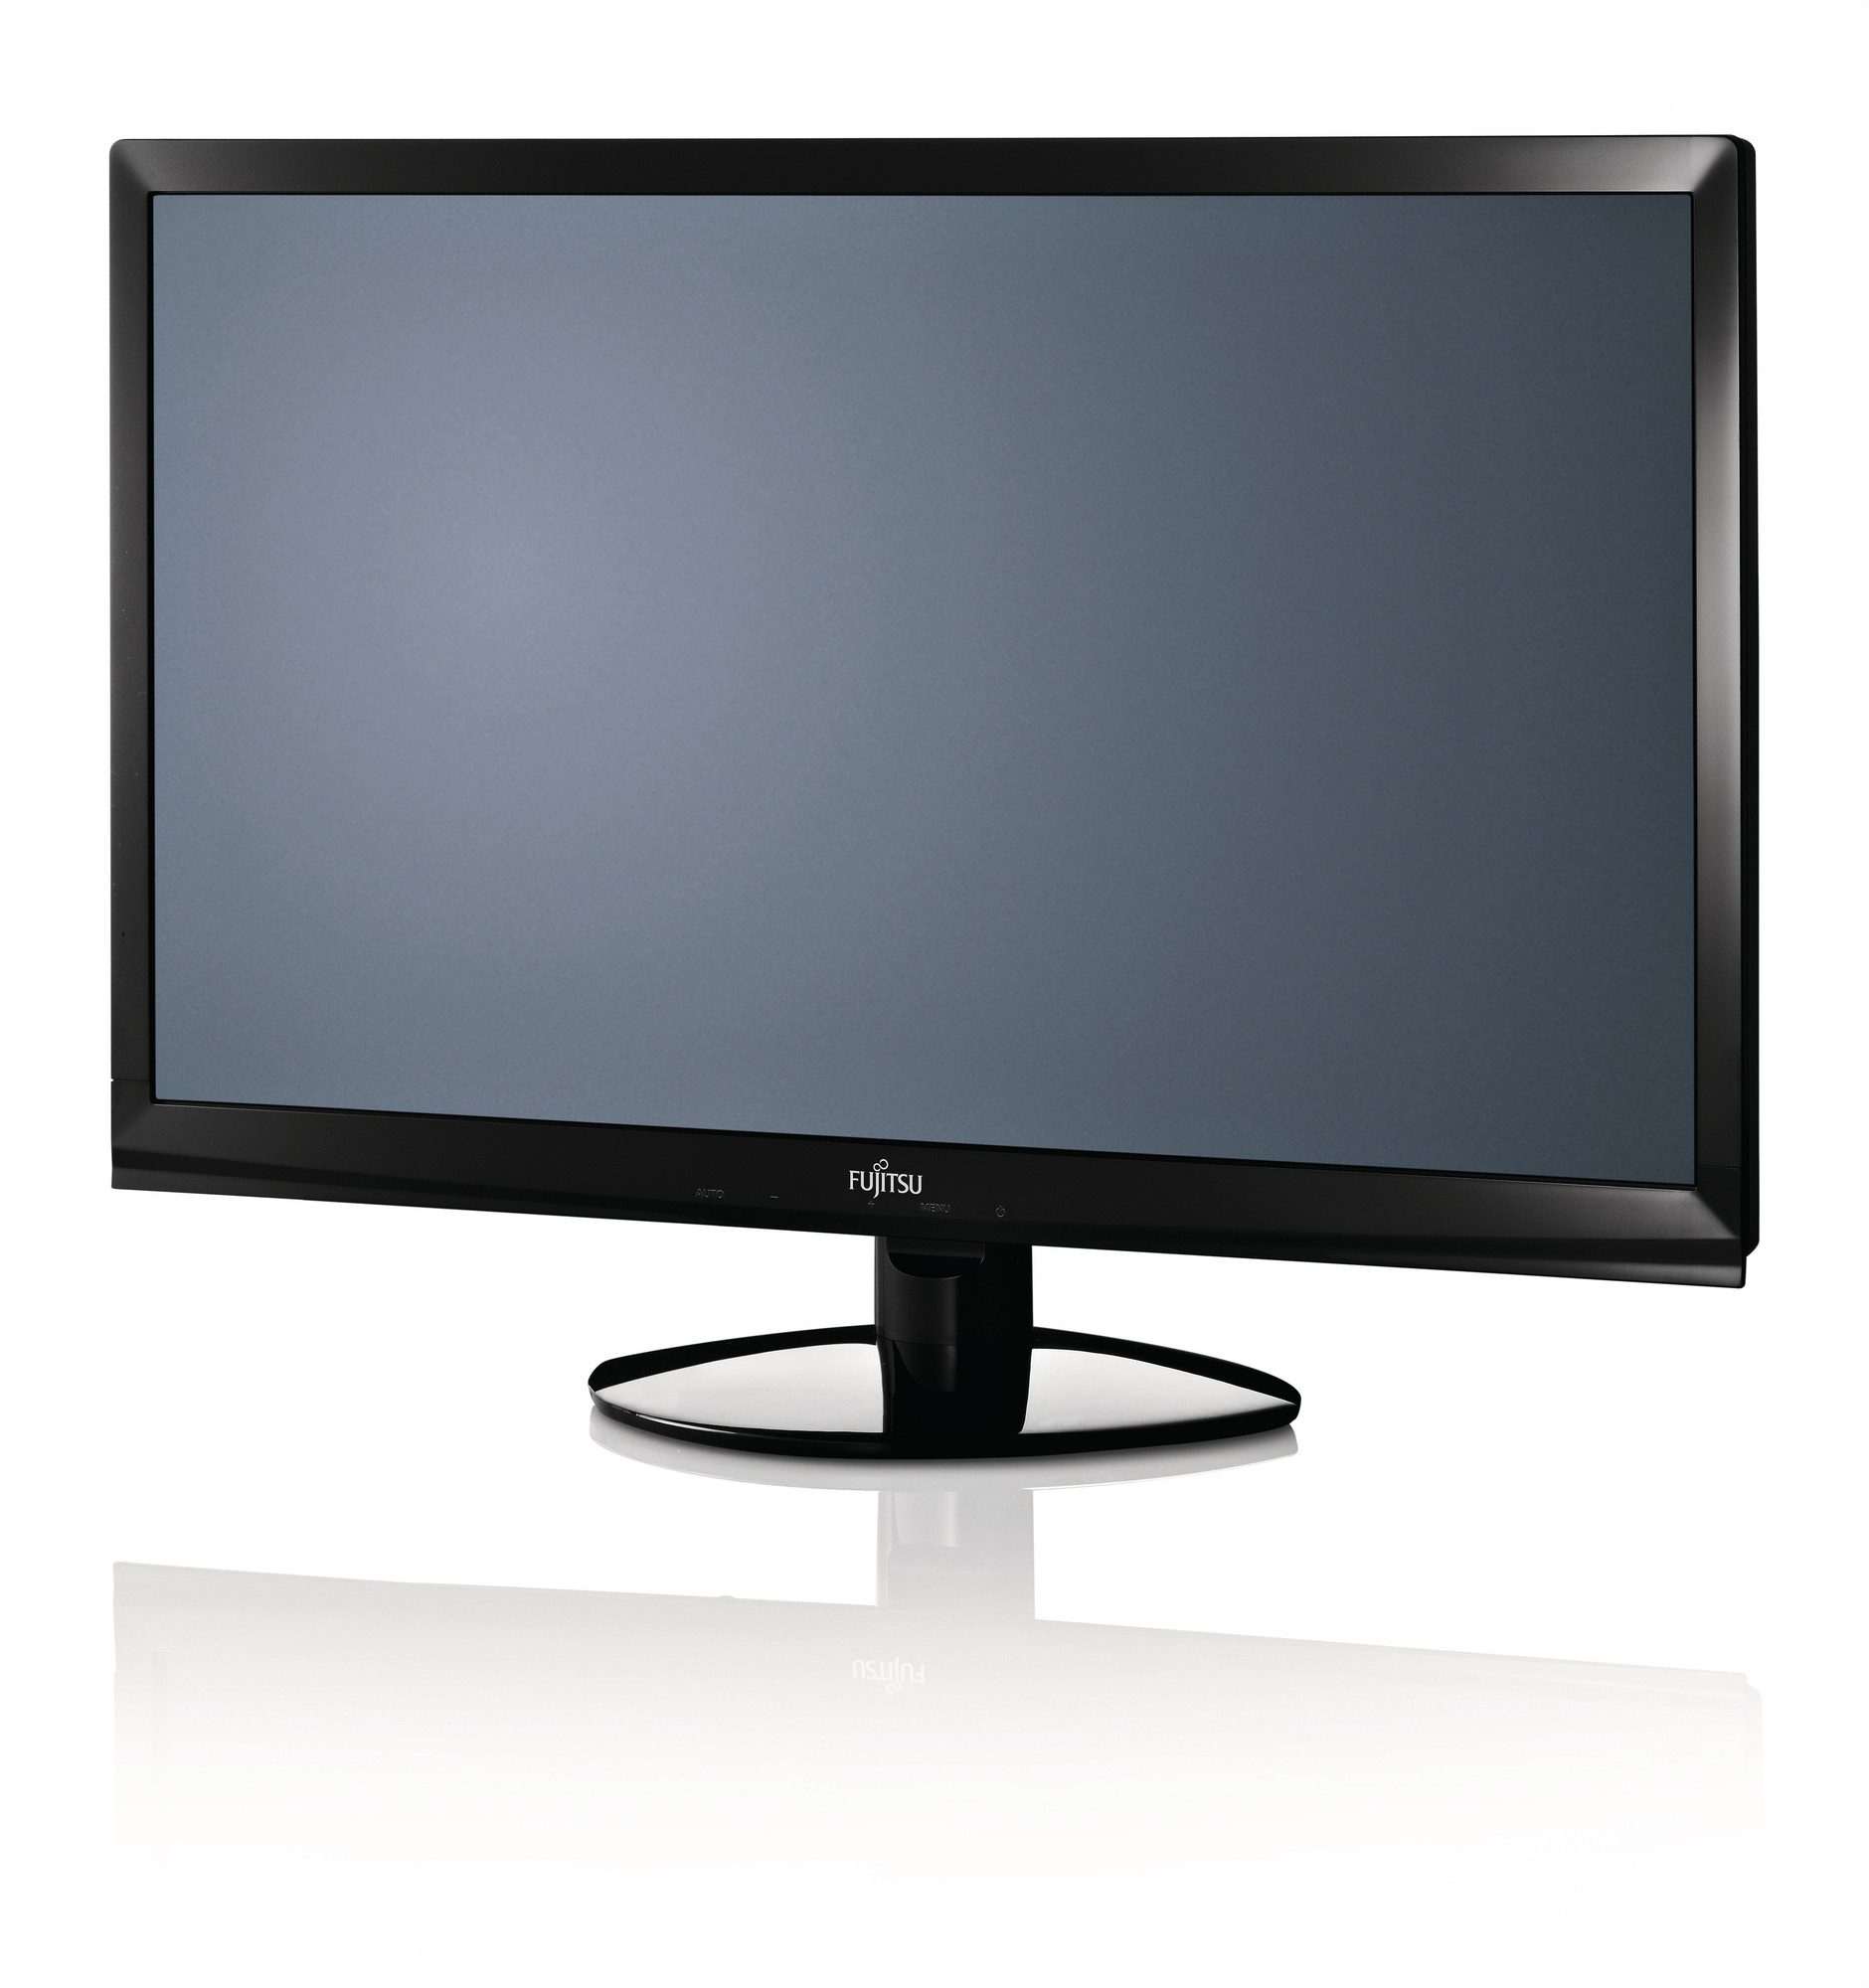 Fujitsu L22T-5 LED-Monitor, 22 Zoll, 54,6 cm, 1920 x 1080, FullHD 16:9, 250 cd/m², Reaktionszeit 5 ms, VGA, DVI